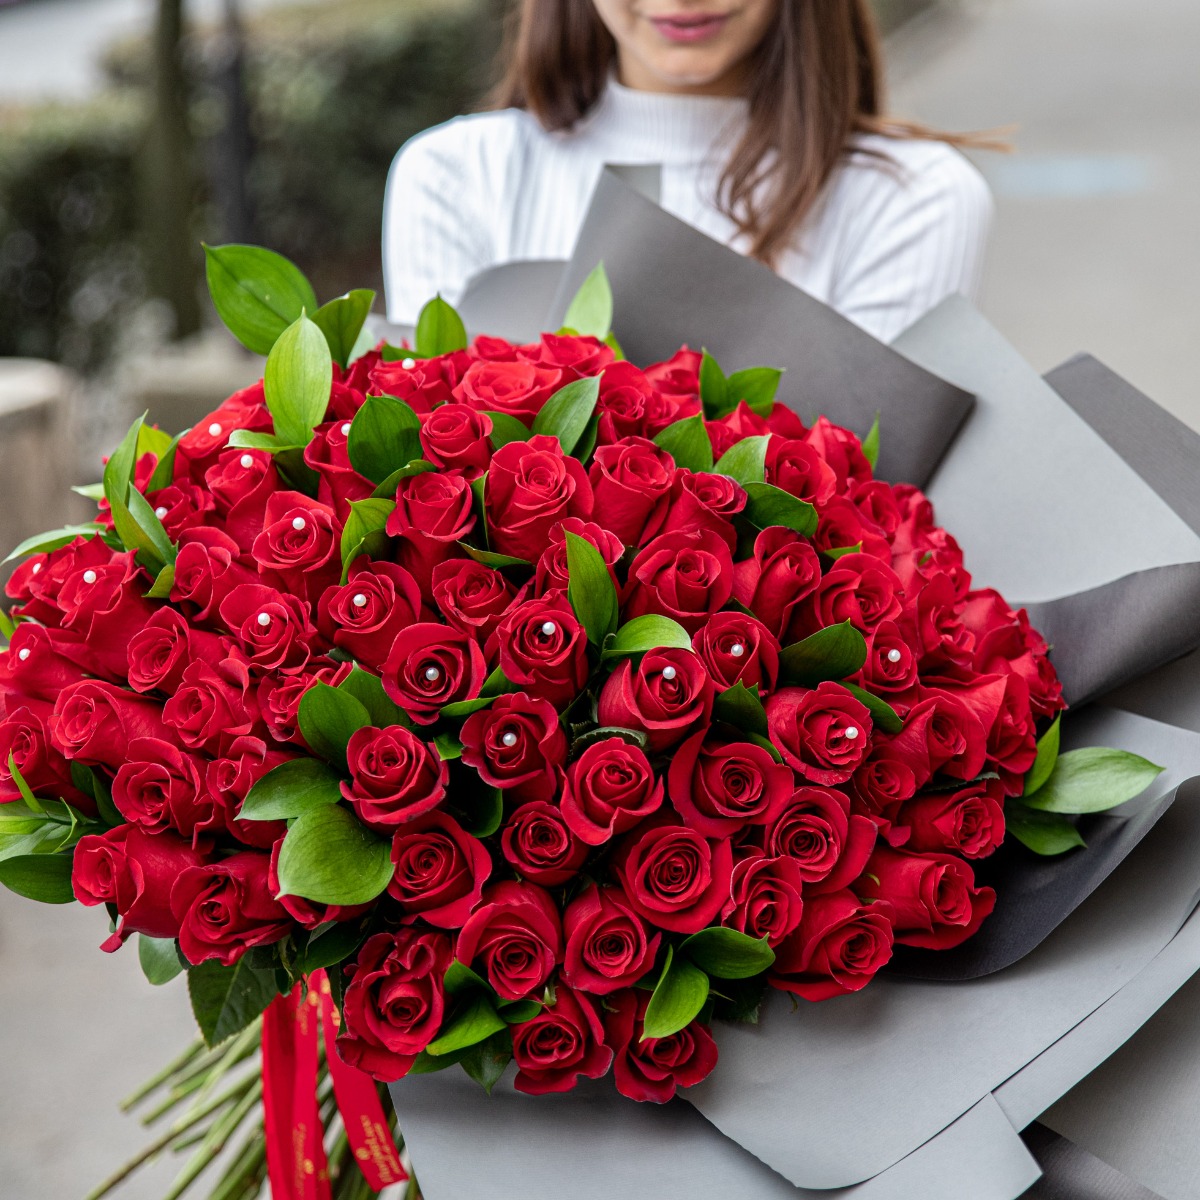 Buchet 101 trandafiri romantici